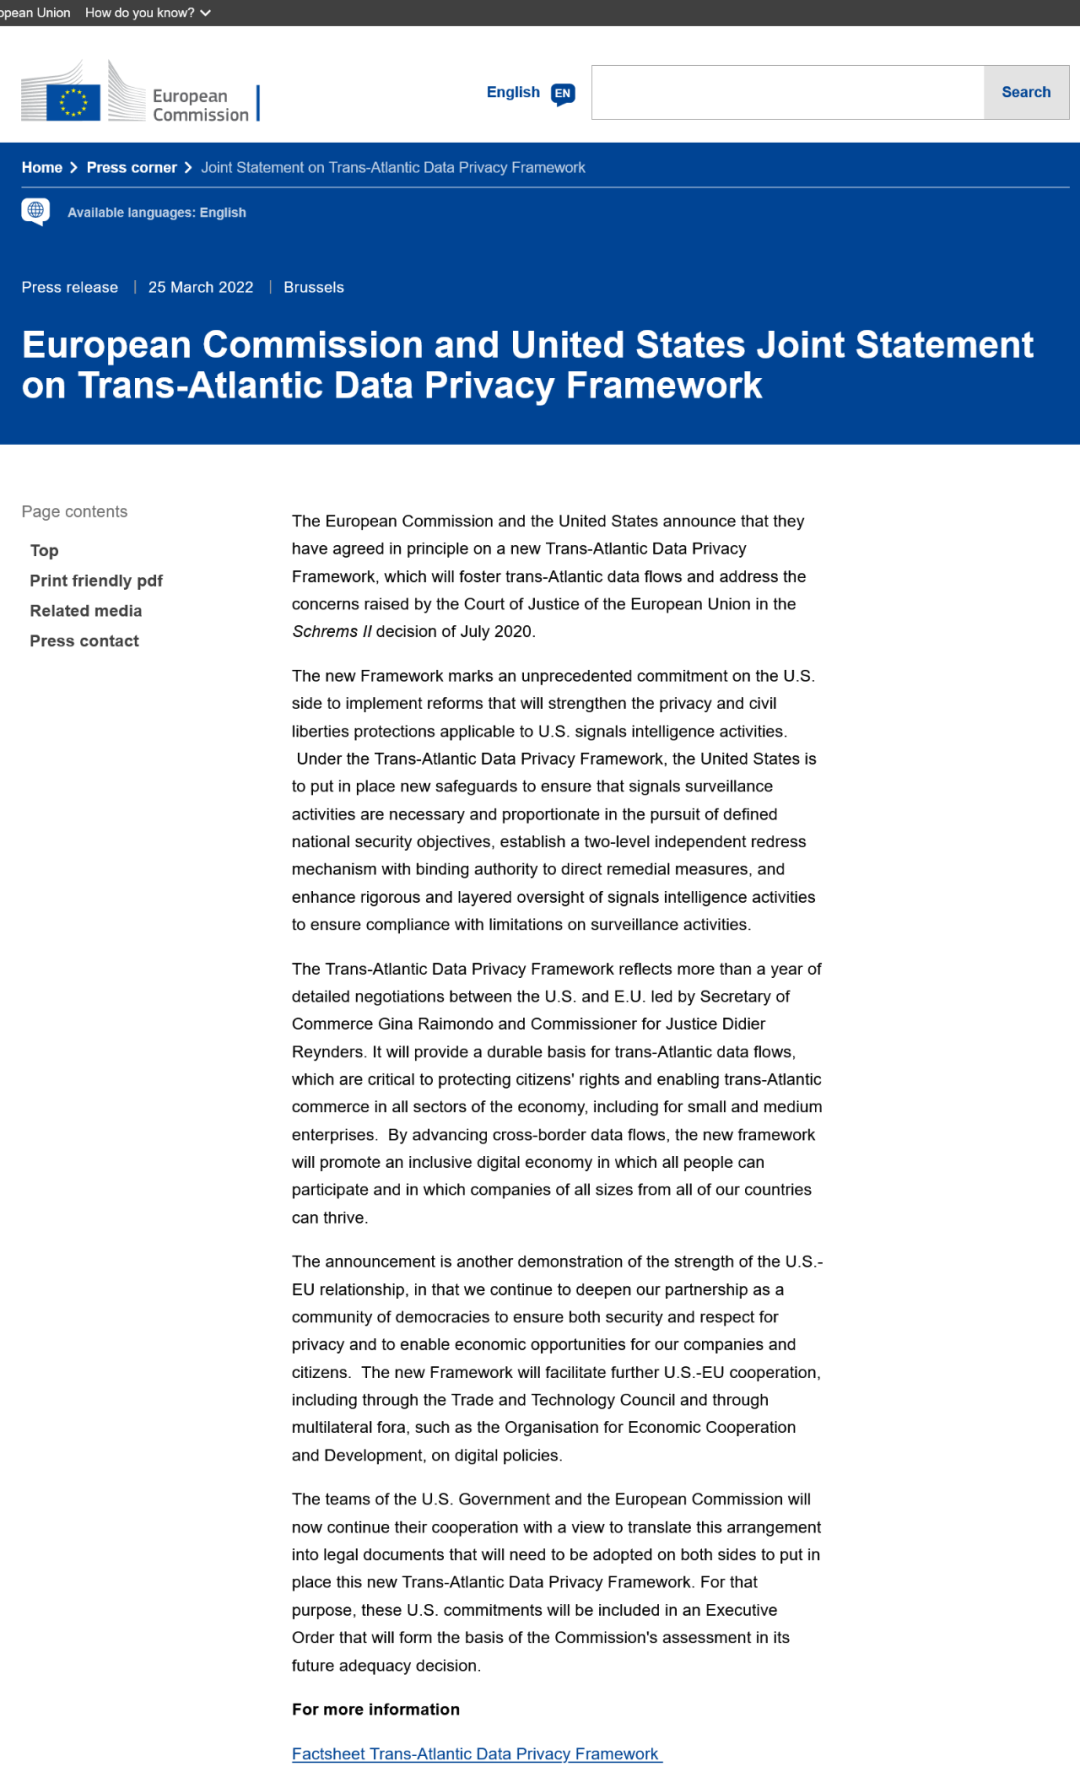 美欧就新的跨大西洋数据隐私框架达成原则性协议